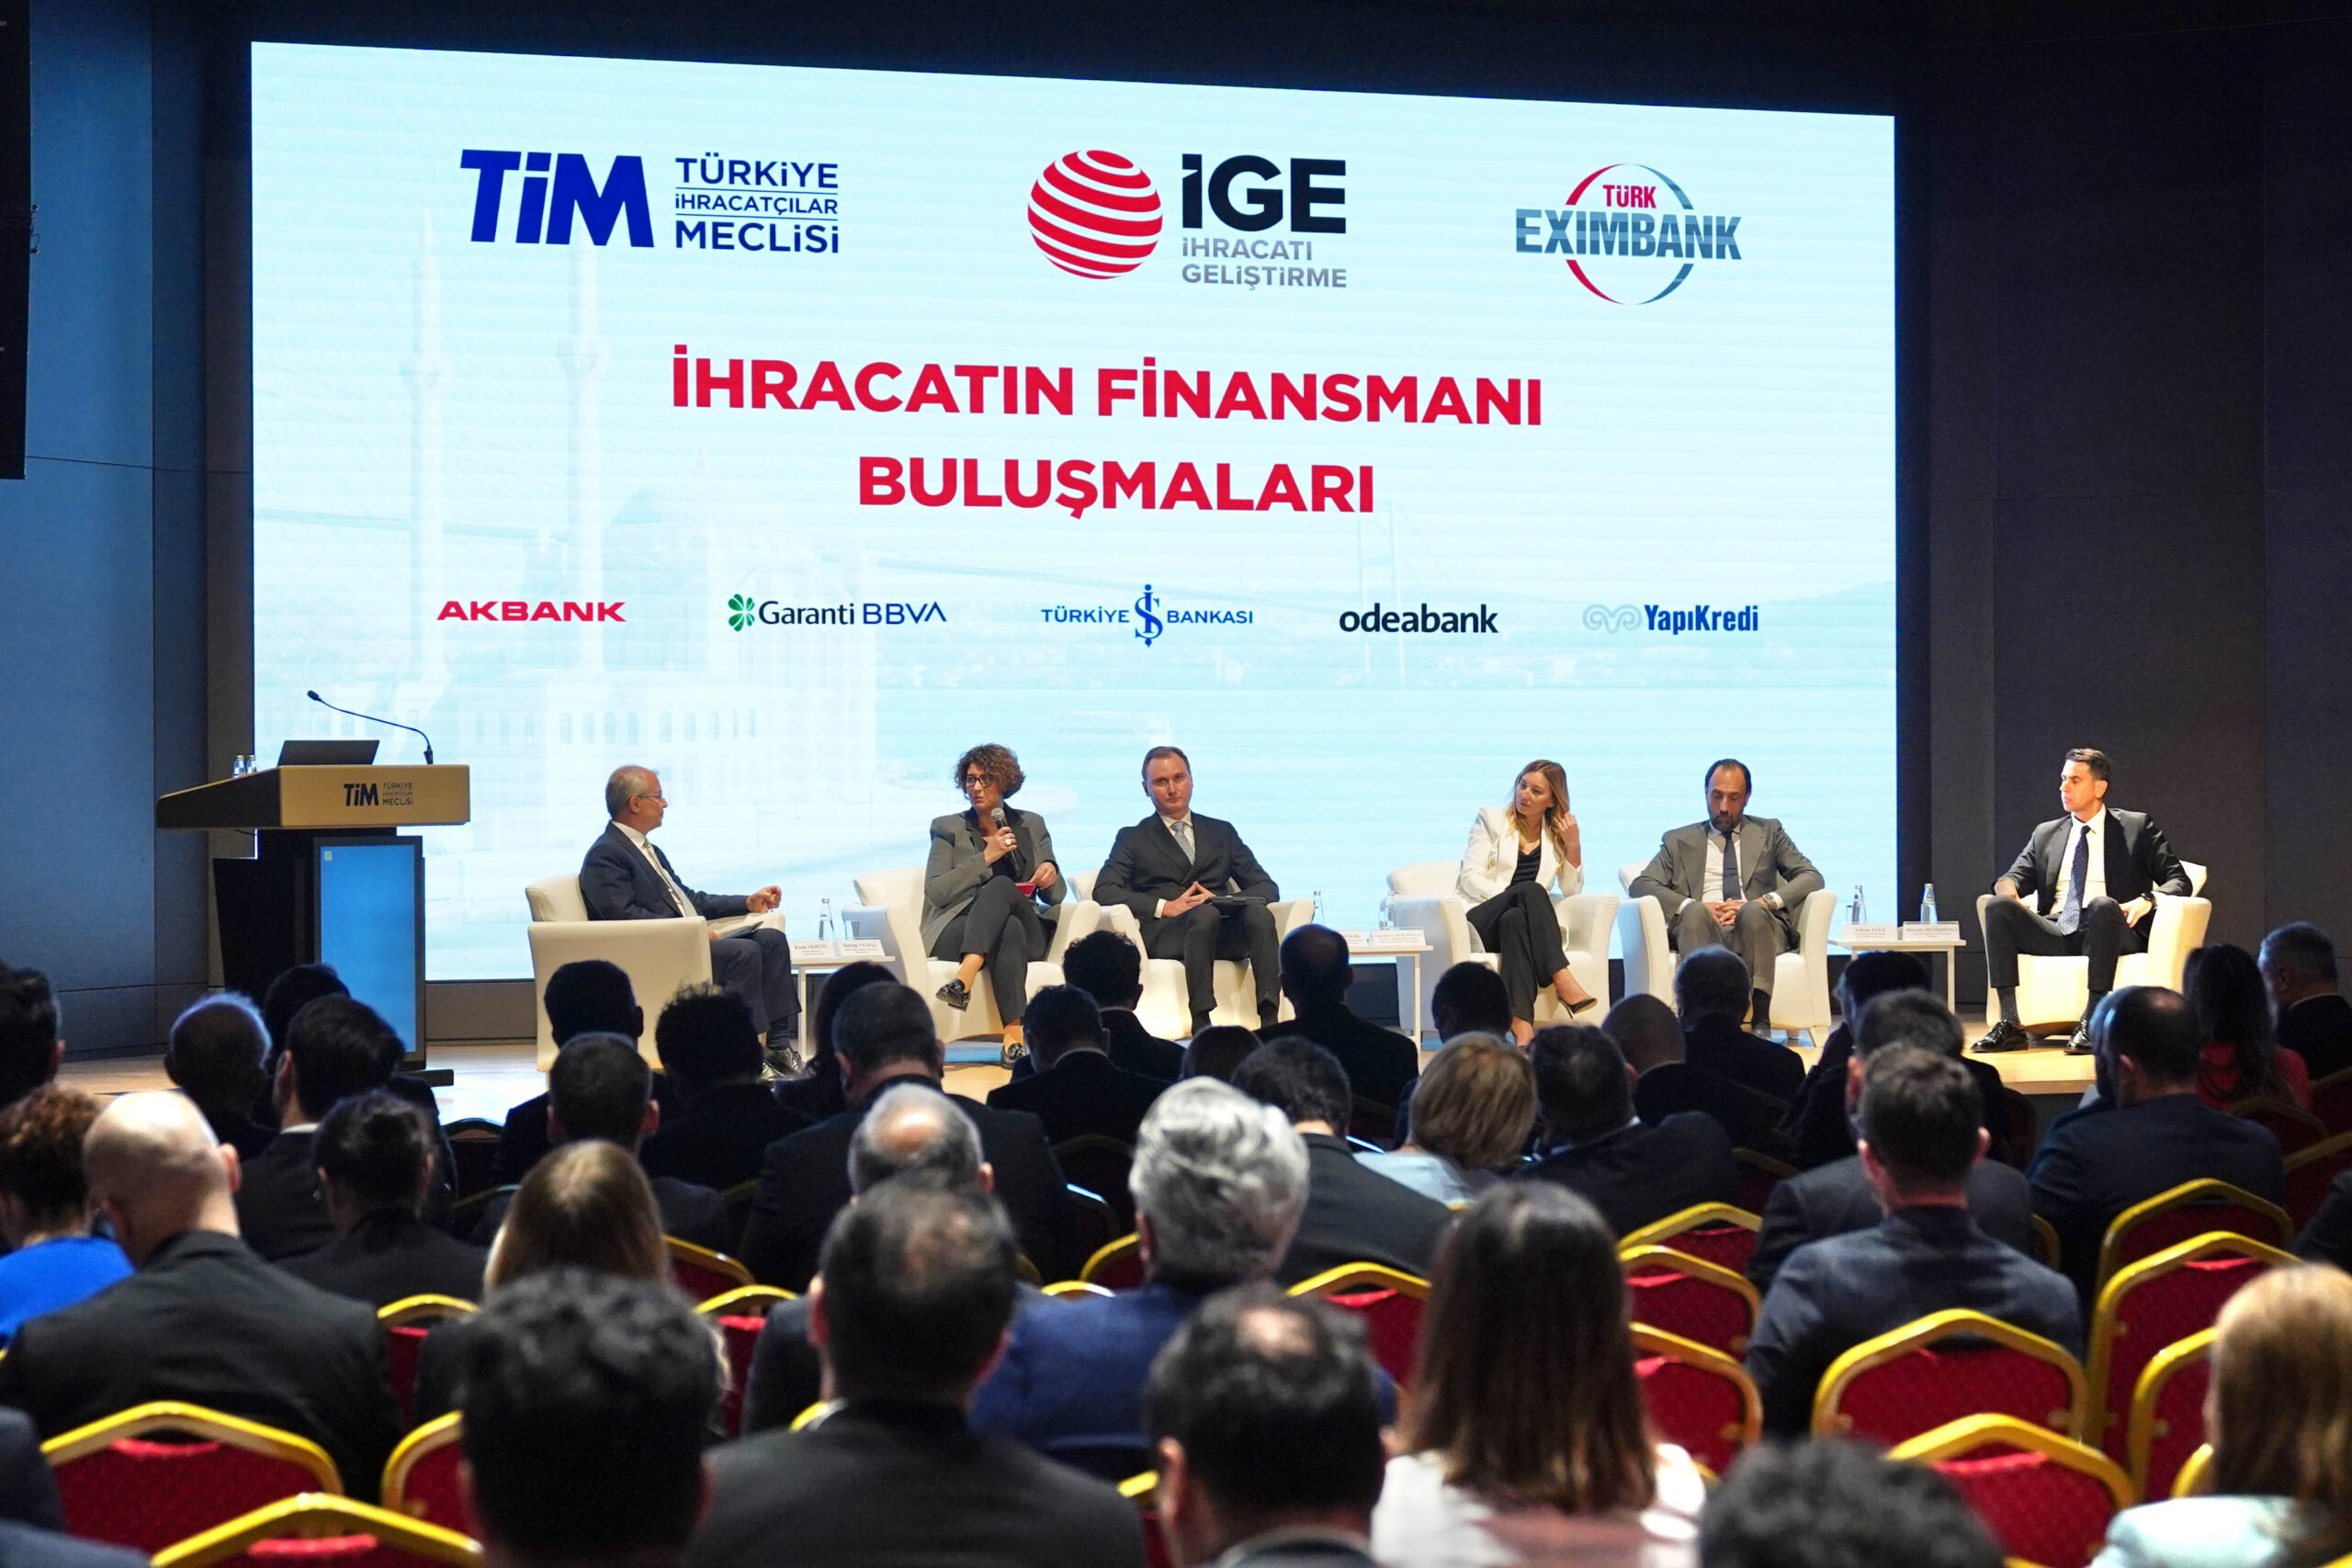 İhracat ve bankacılık dünyasının önemli aktörleri İstanbul’da bir araya geldi